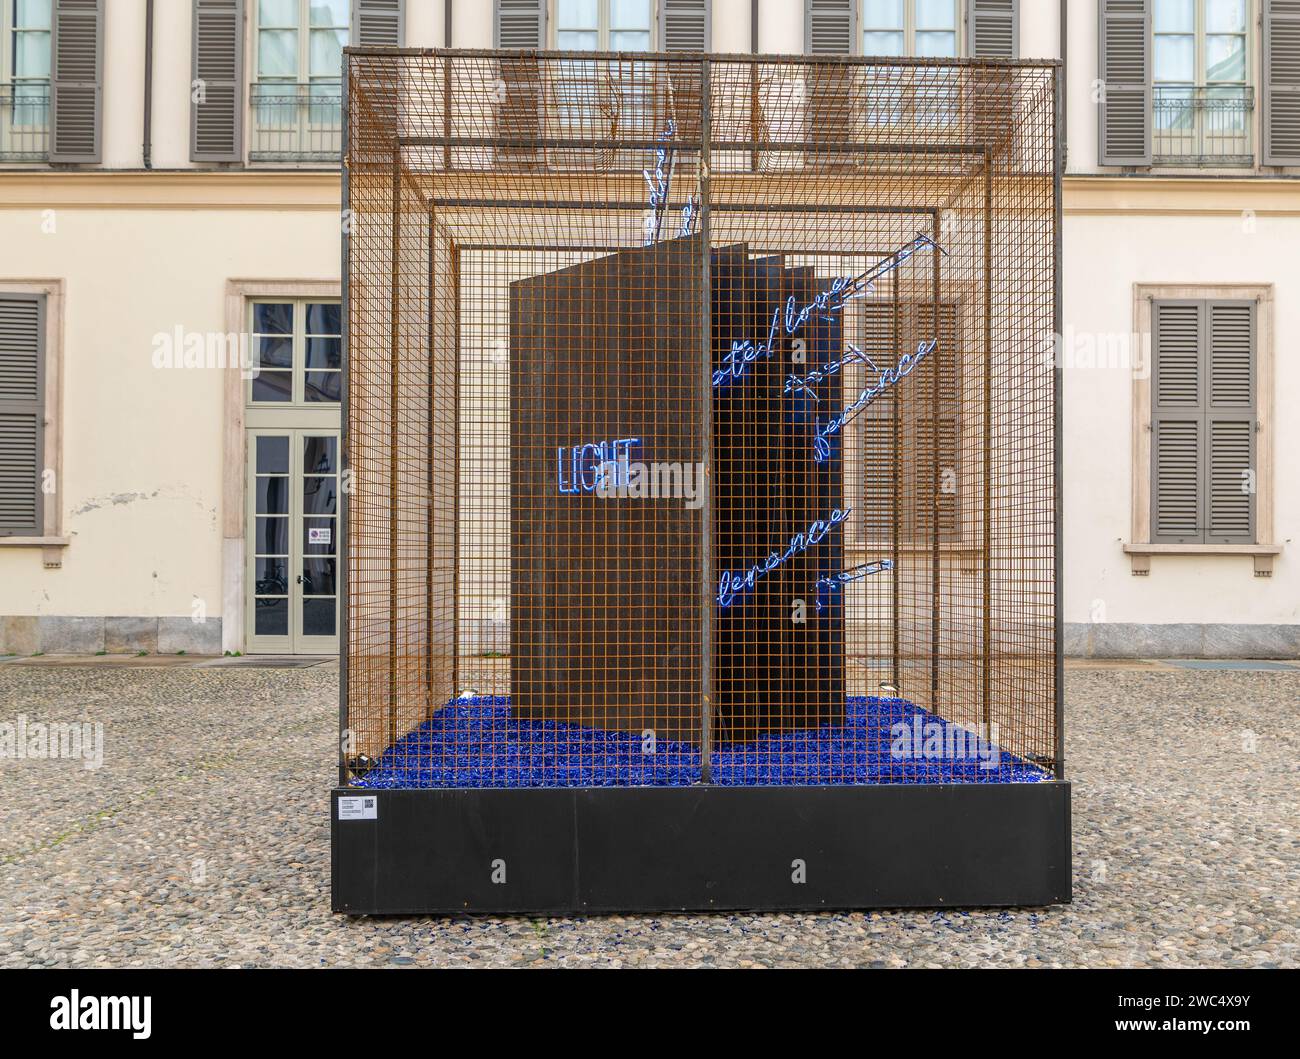 La luce della mente di Federica Marangoni: L'installazione sarà visibile nel cortile del Palazzo reale di Milano, Italia Foto Stock